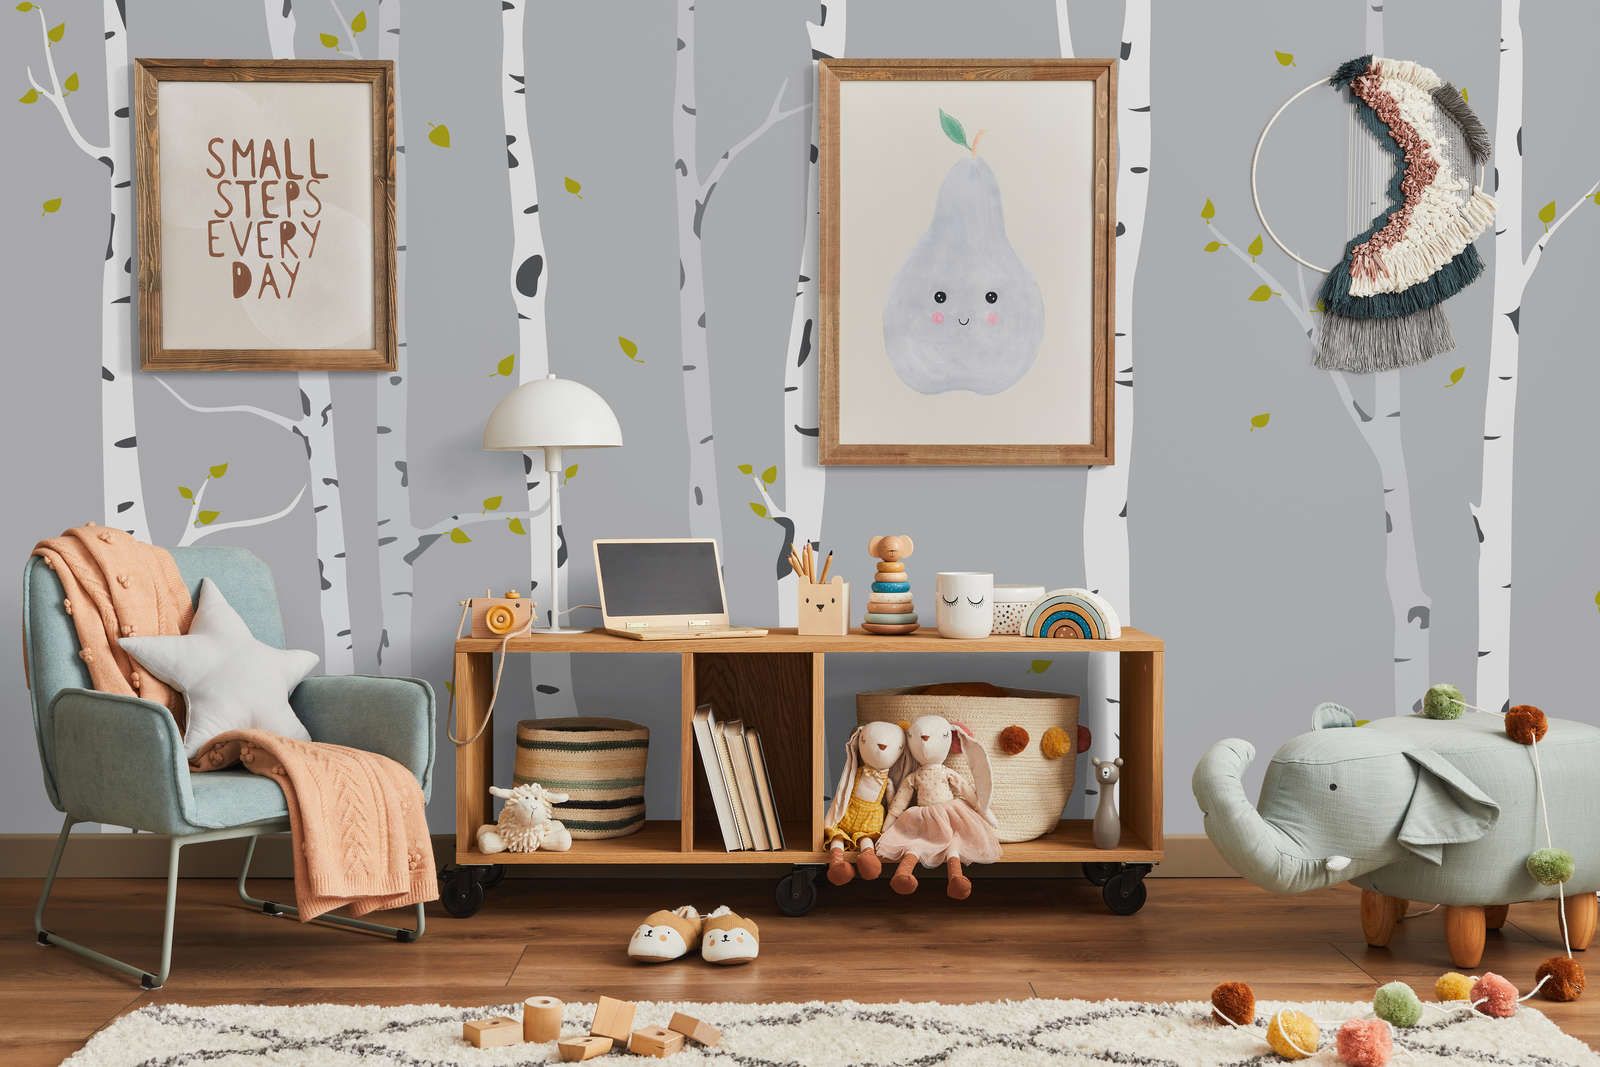             Digital behang met geschilderd berkenbos voor kinderkamer - Glad & parelmoervlies
        